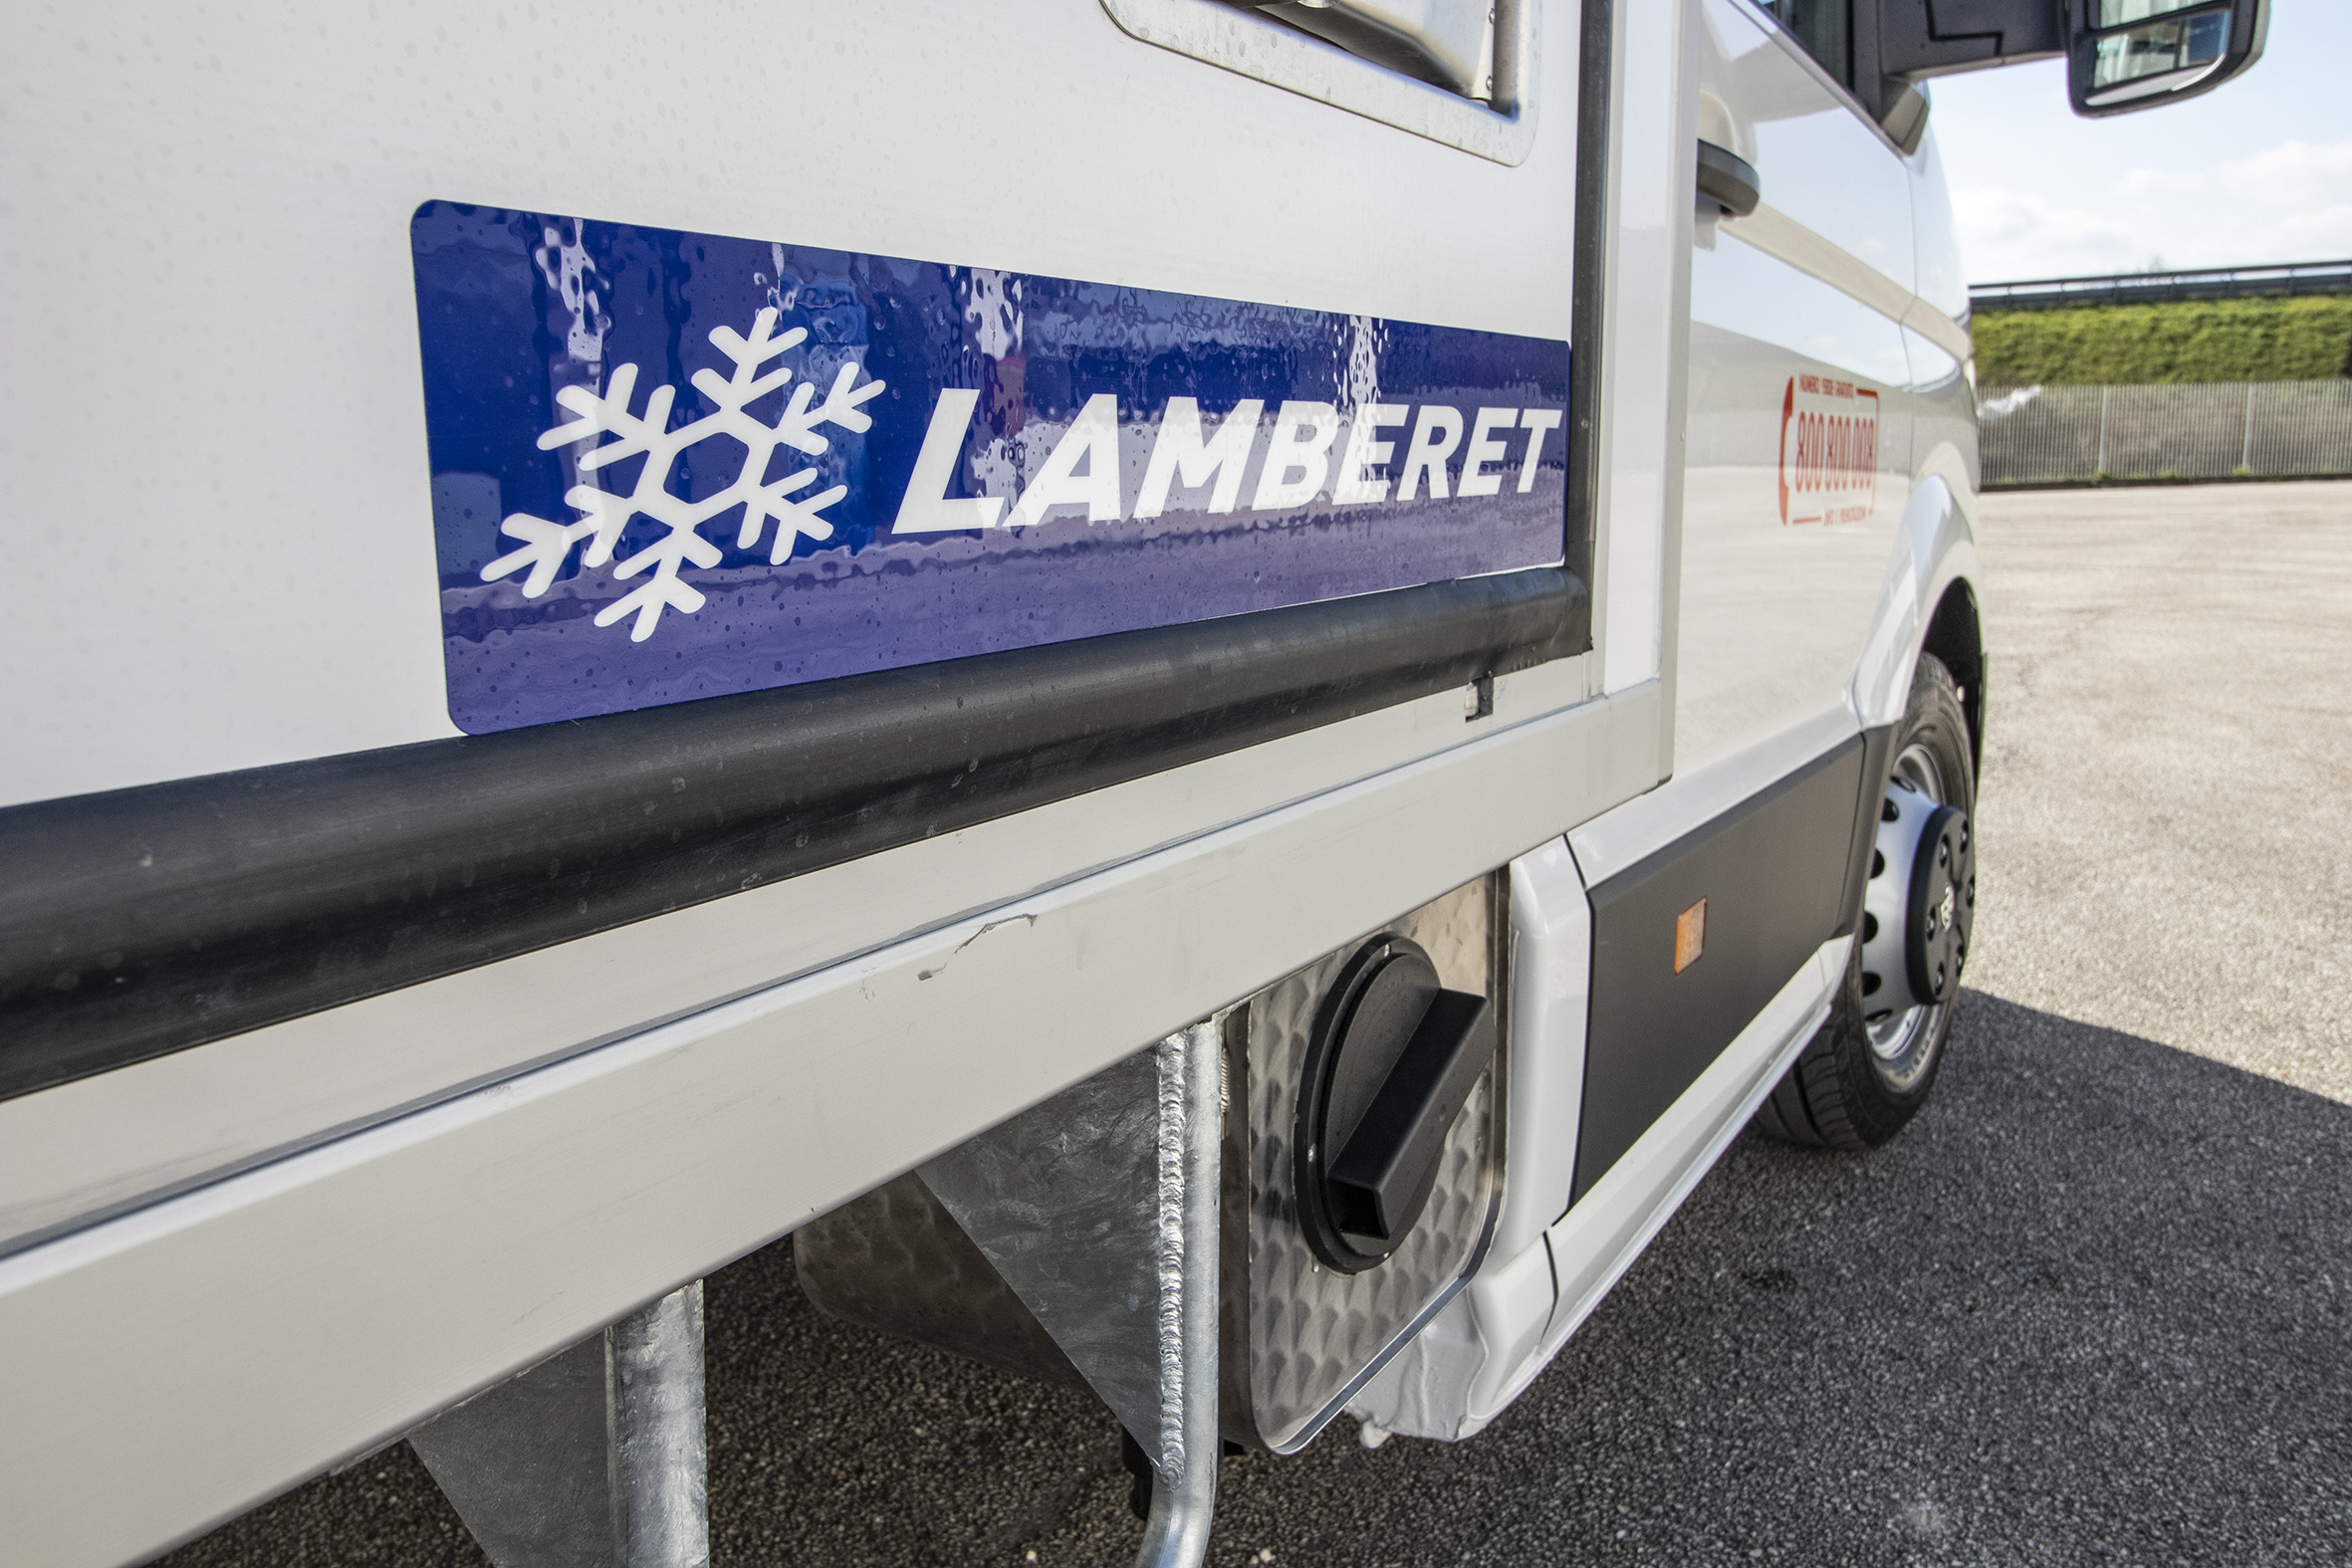 Trasporto refrigerato, Lamberet: operativo il polo d’eccellenza nel Lazio